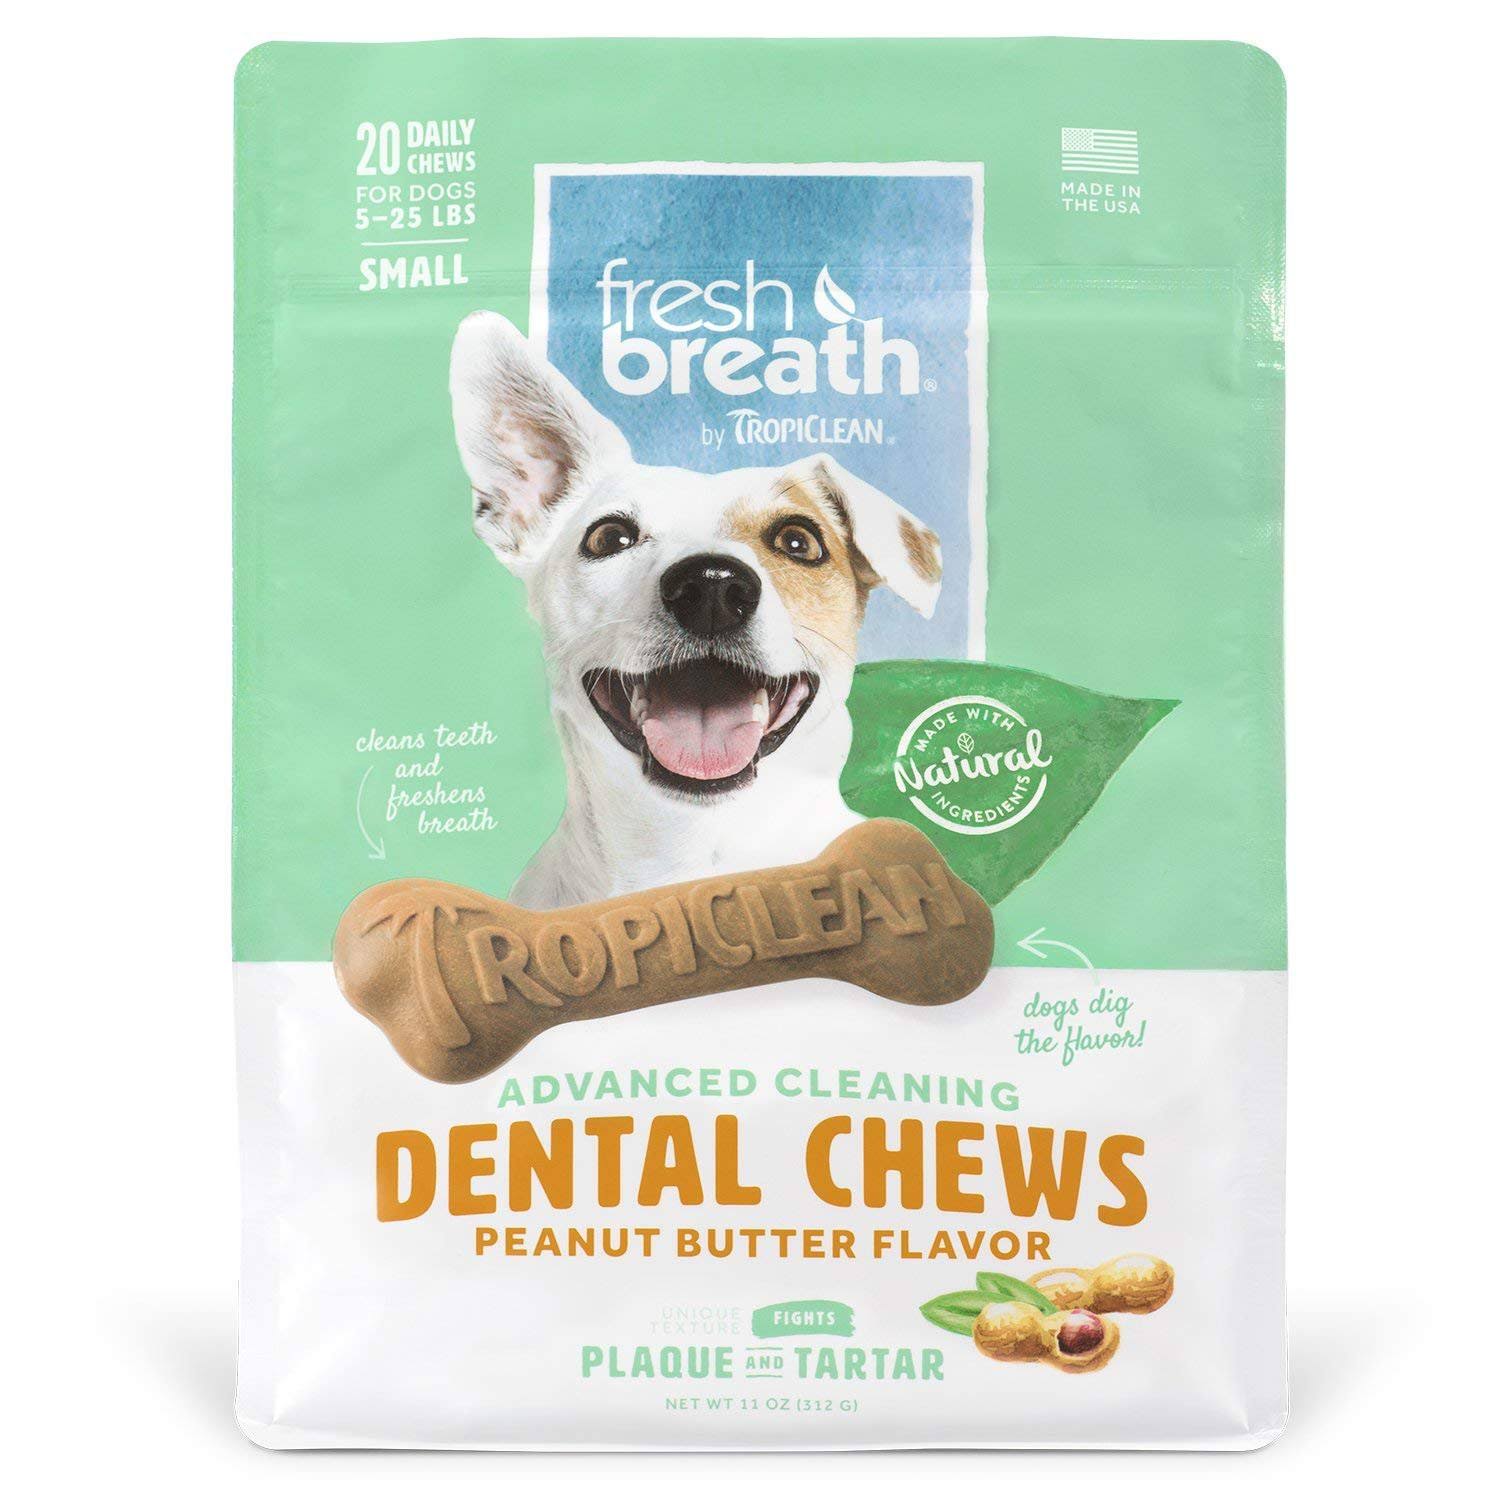 Tropiclean Fresh Breath Peanut Butter Flavored Dental Chews, 20 Pack,